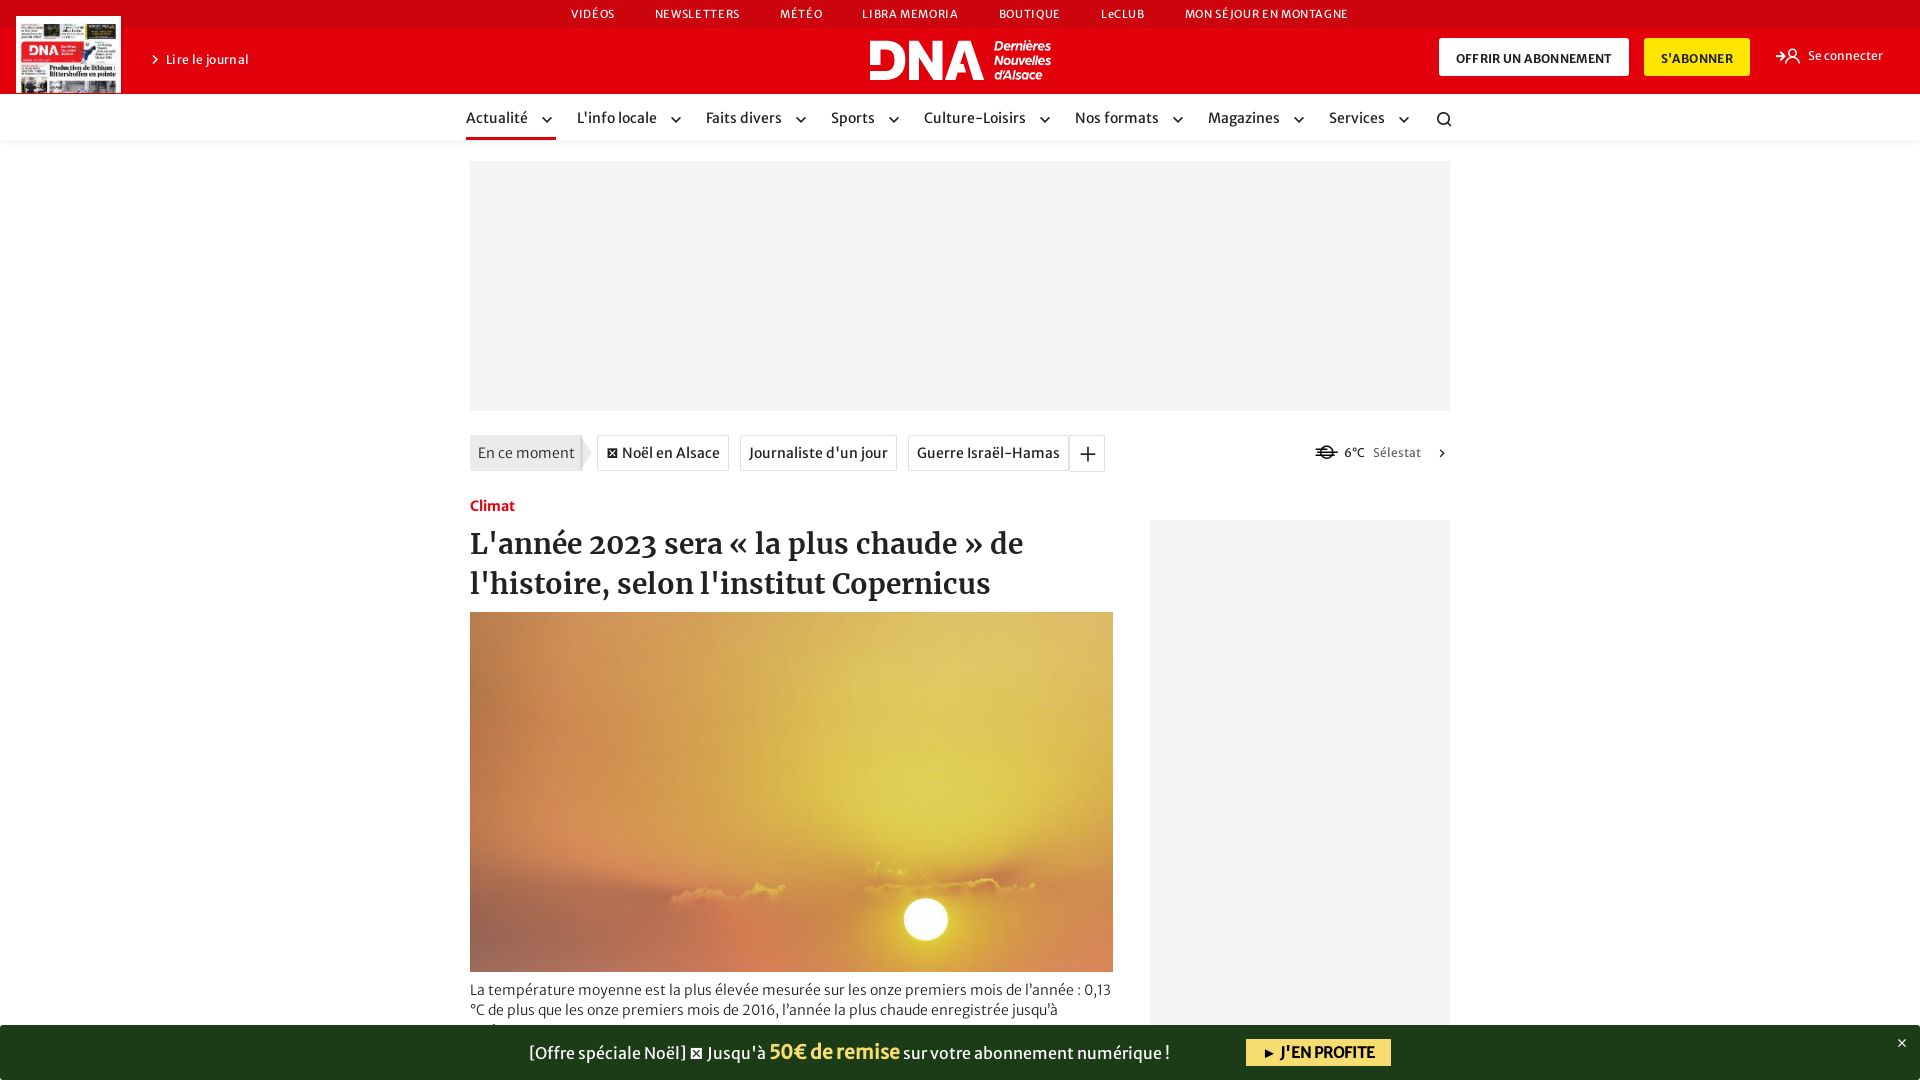 Website status dna.fr is   ONLINE